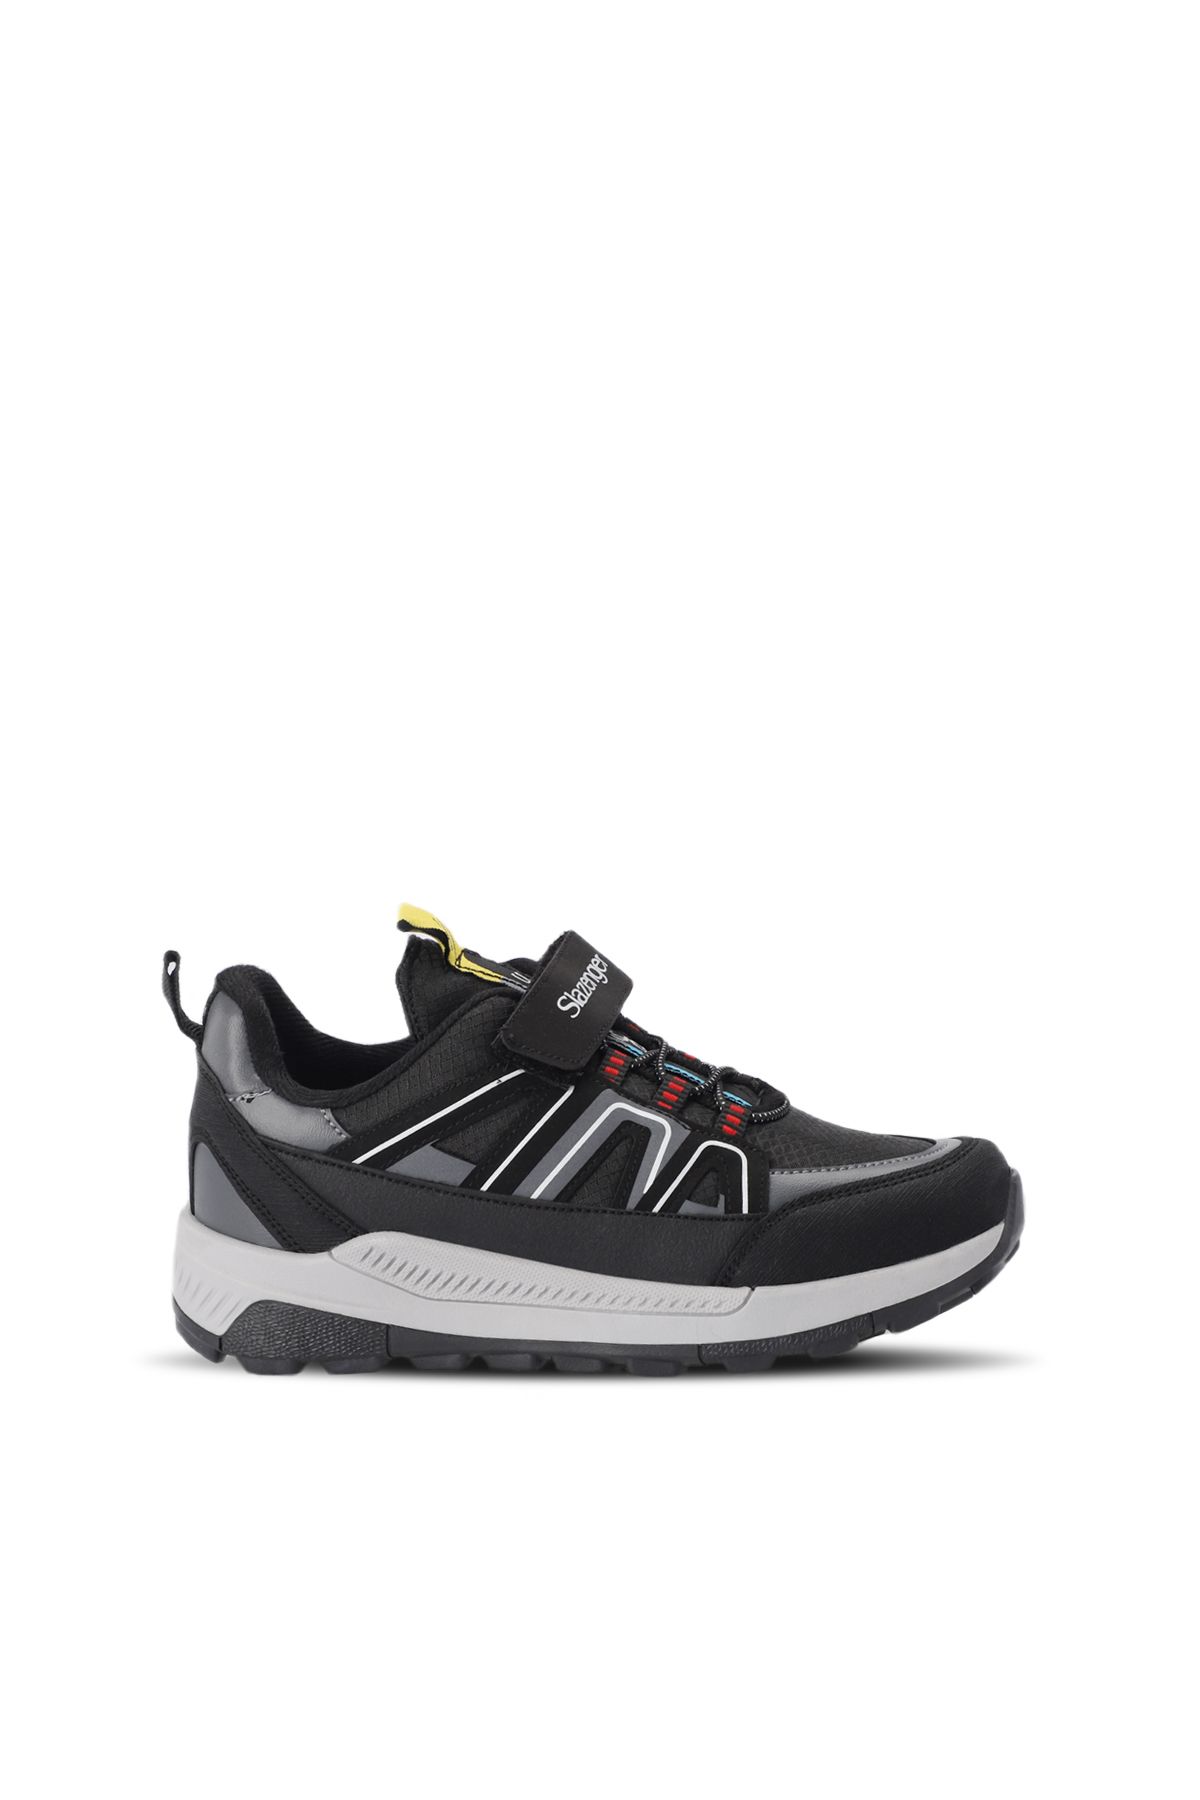 Slazenger KROSS Sneaker Erkek Çocuk Ayakkabı Siyah / Beyaz